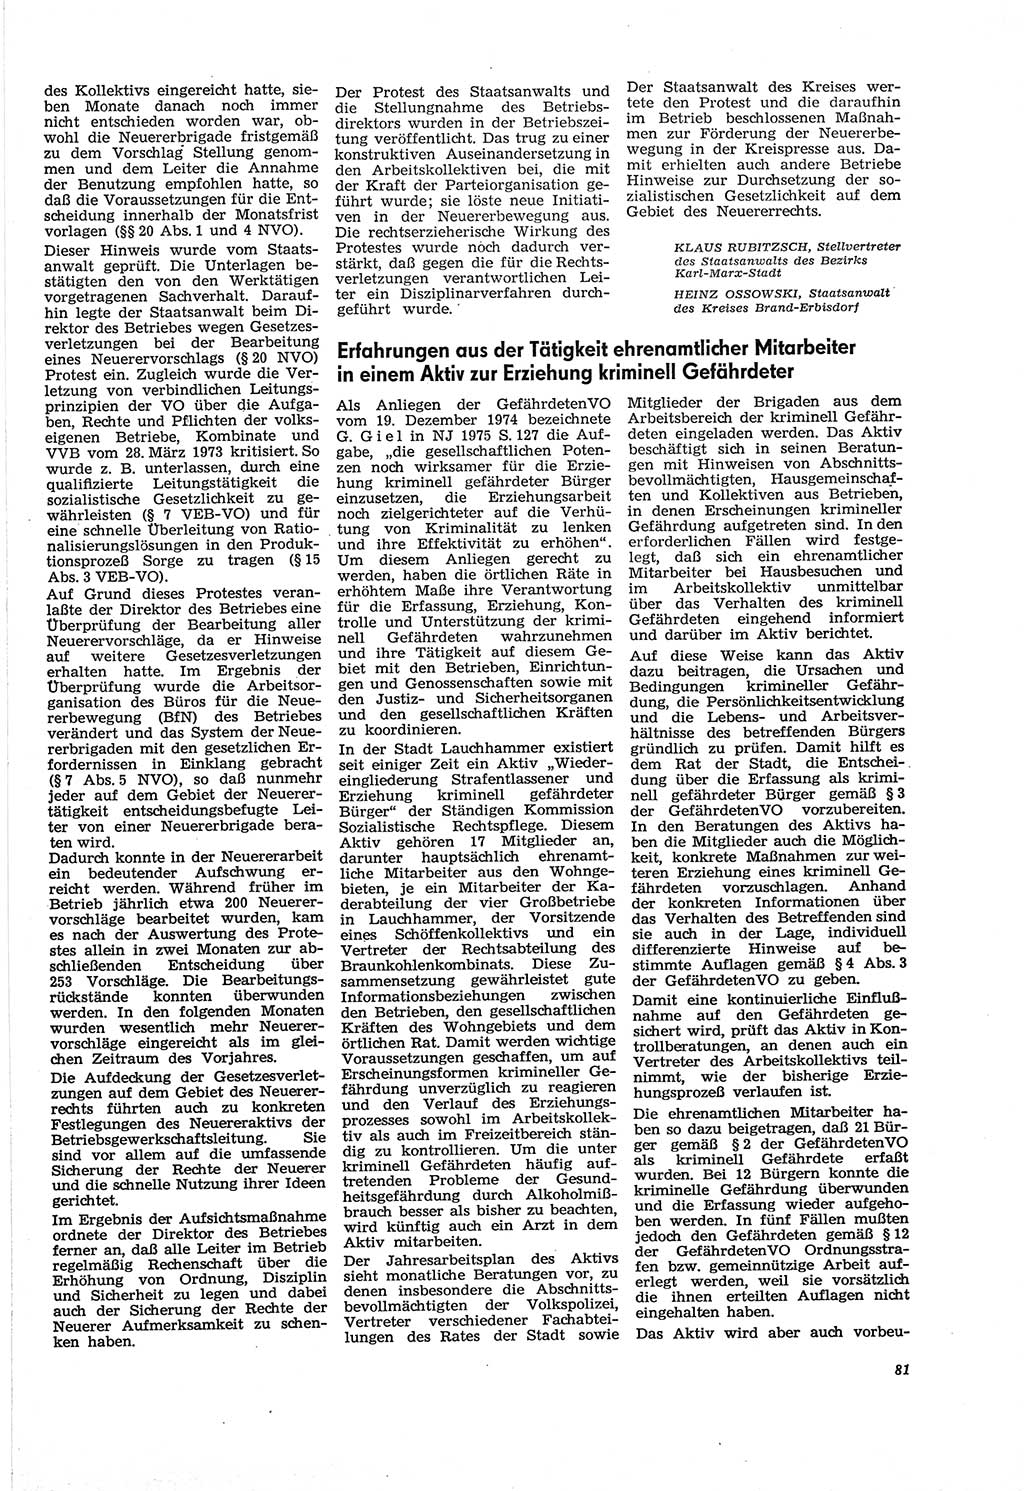 Neue Justiz (NJ), Zeitschrift für Recht und Rechtswissenschaft [Deutsche Demokratische Republik (DDR)], 30. Jahrgang 1976, Seite 81 (NJ DDR 1976, S. 81)